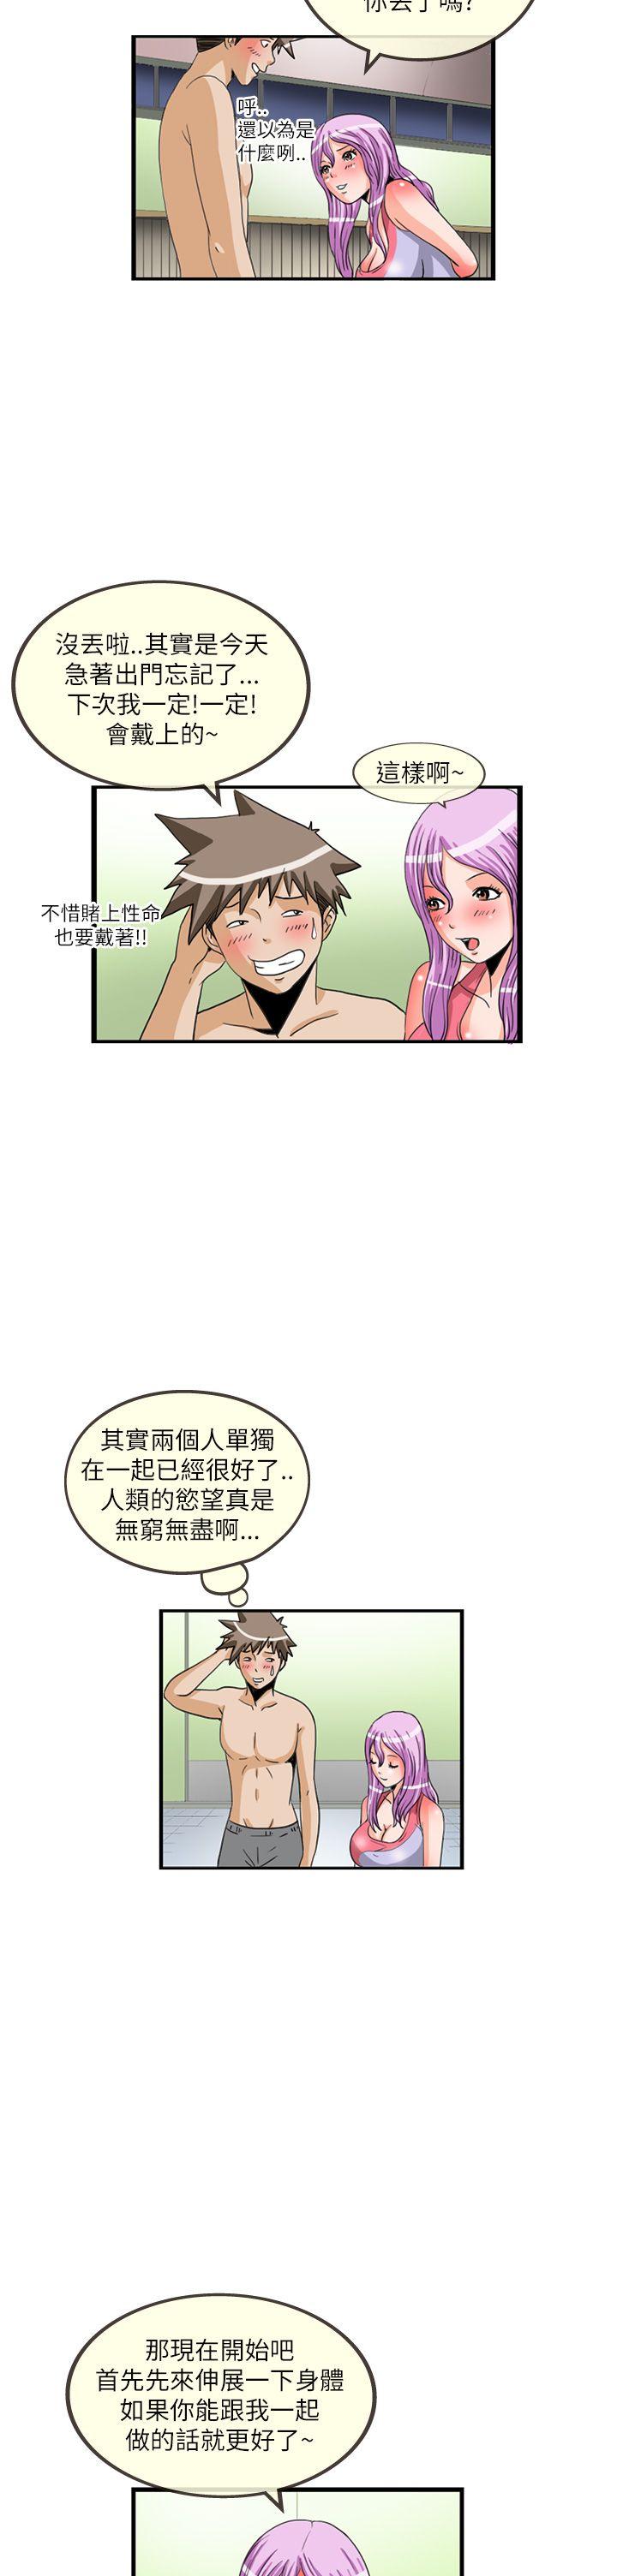 韩国污漫画 透視！女子遊泳部 第11话 11